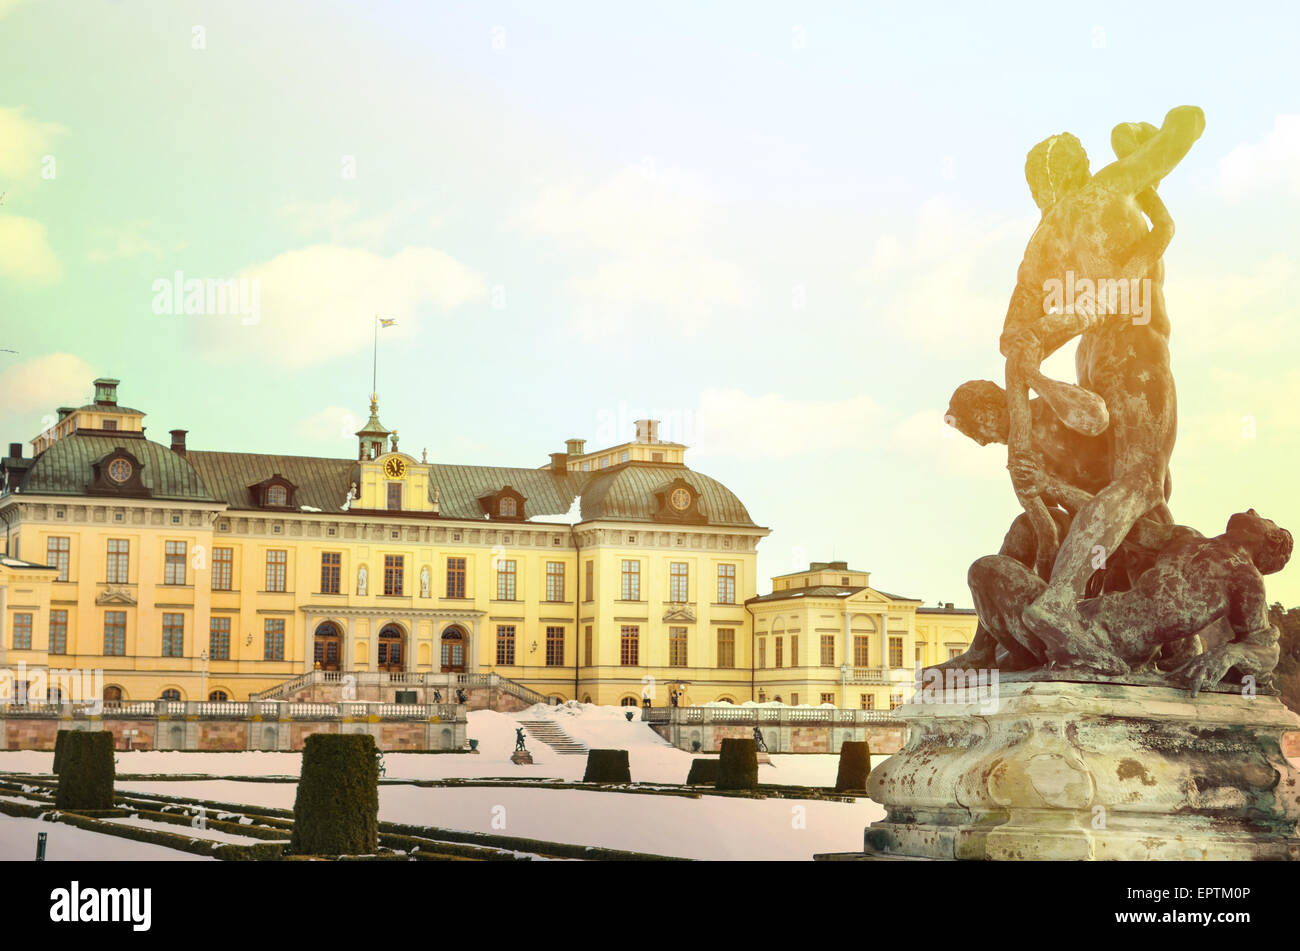 Drottningholm Palace Gardens at Stockholm - Sweden Stock Photo